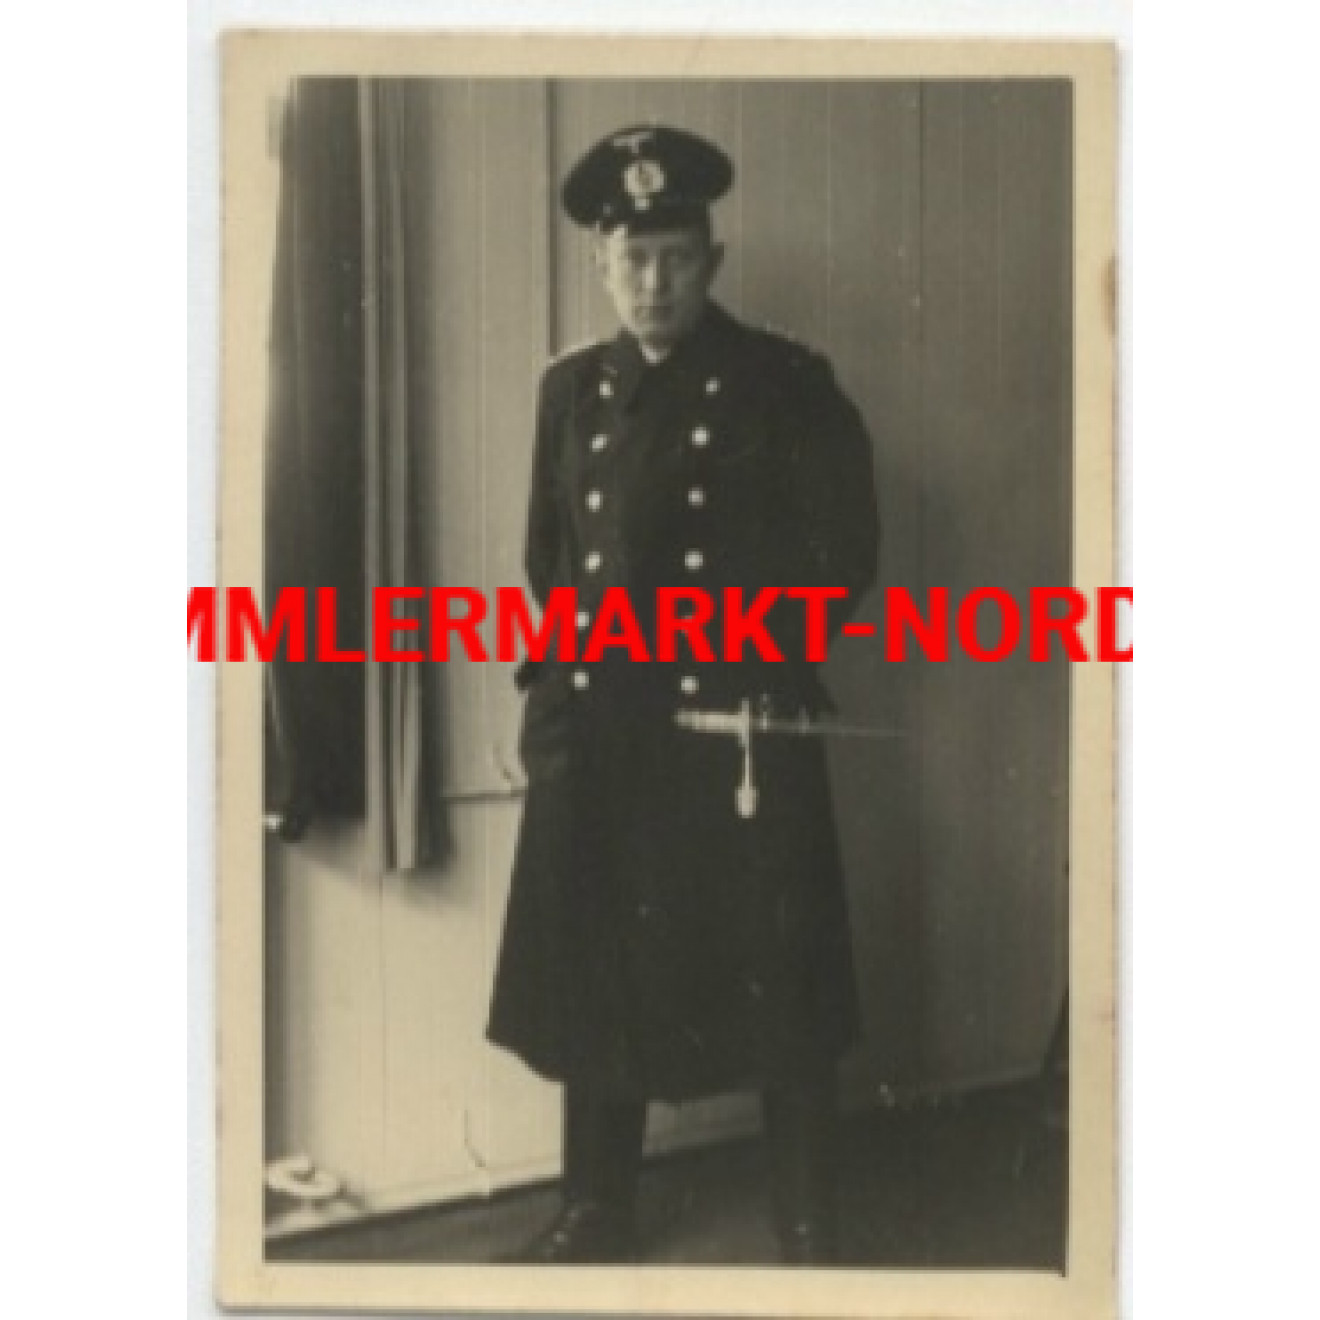 Kriegsmarine officer with dagger